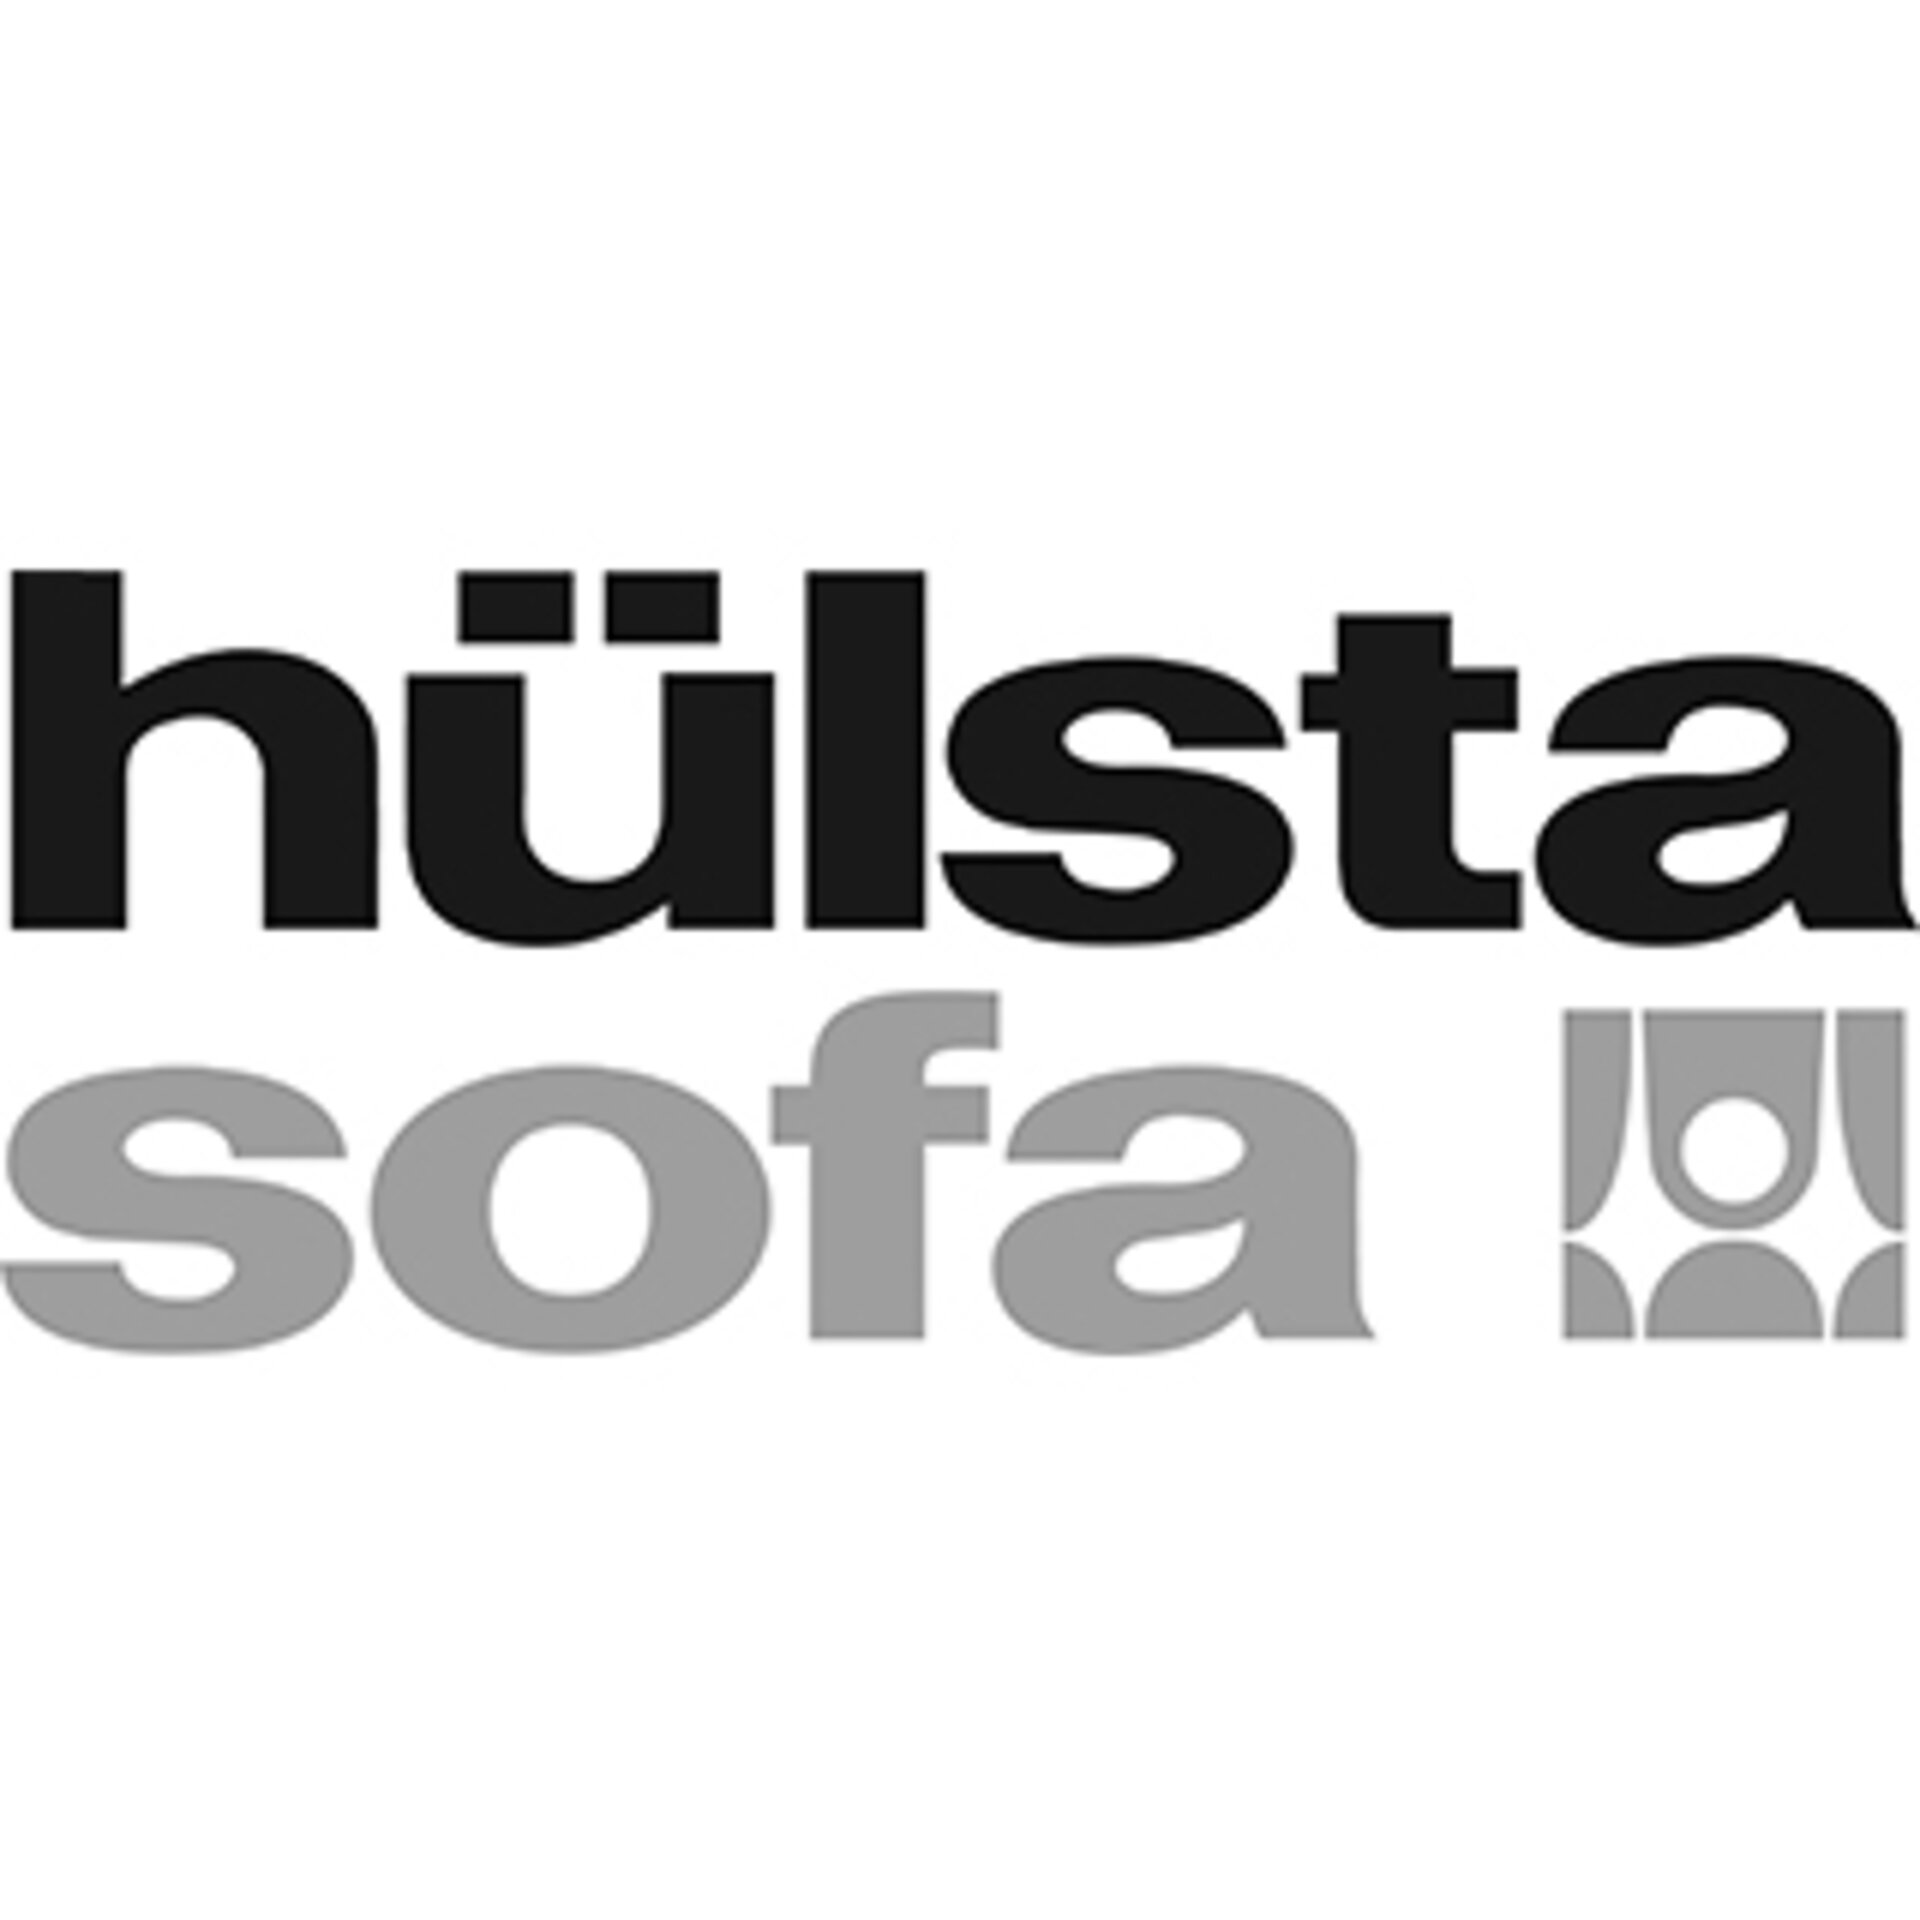 Marken-Logo von hülsta sofa